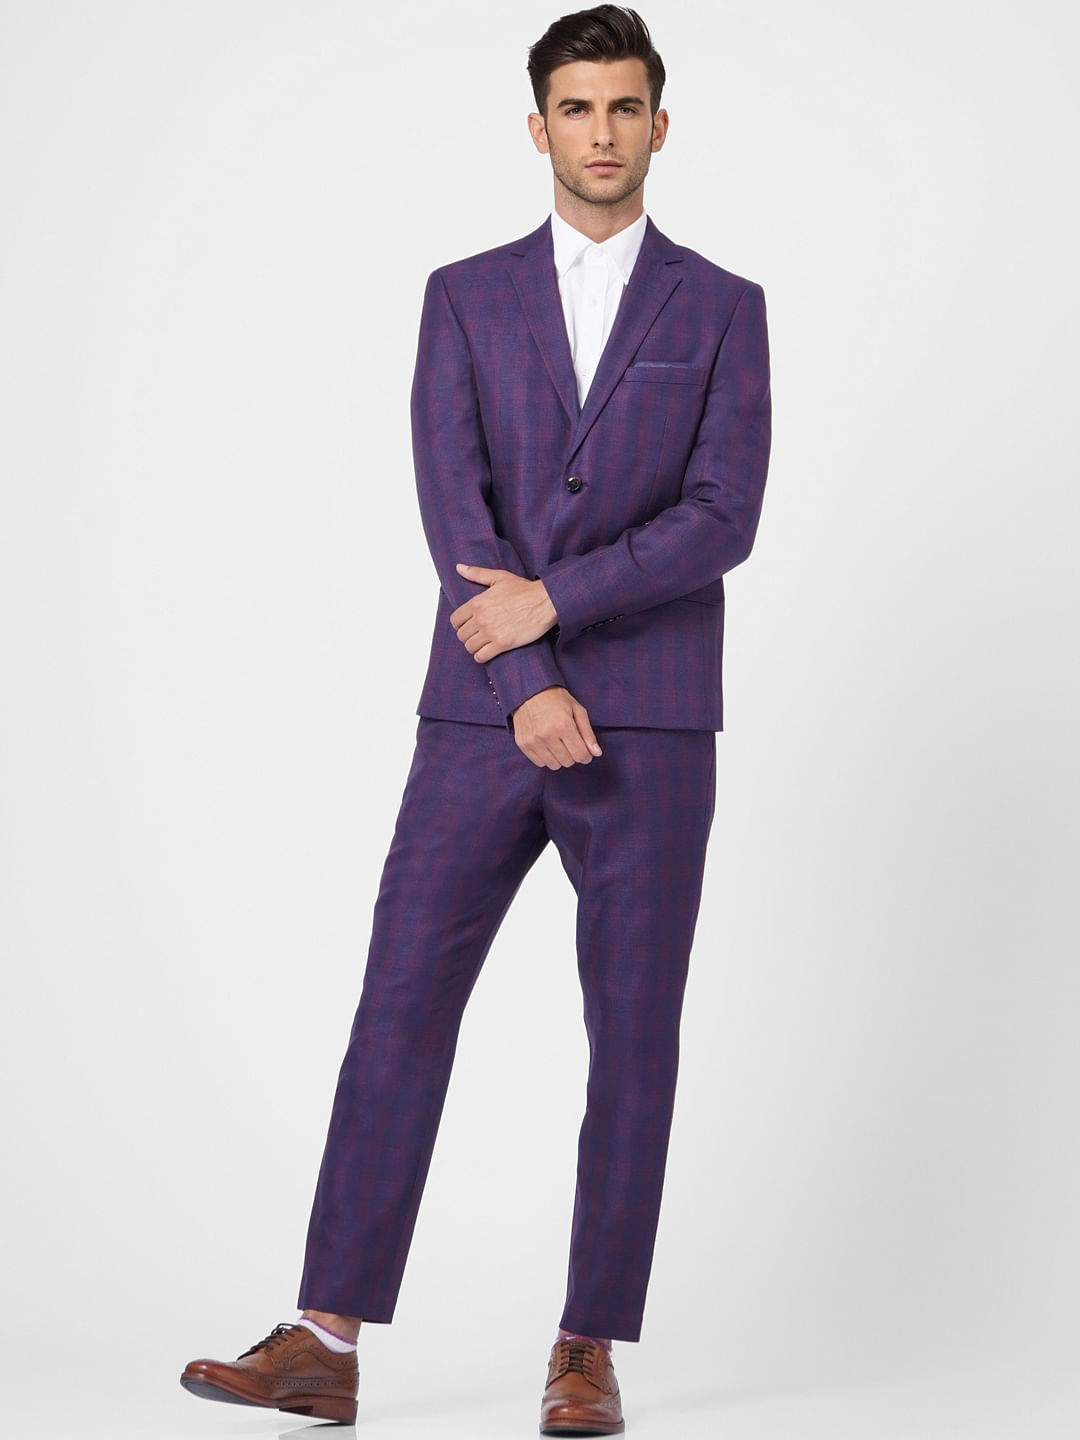 RIZYA Slim Fit Men Purple Trousers  Buy RIZYA Slim Fit Men Purple Trousers  Online at Best Prices in India  Flipkartcom